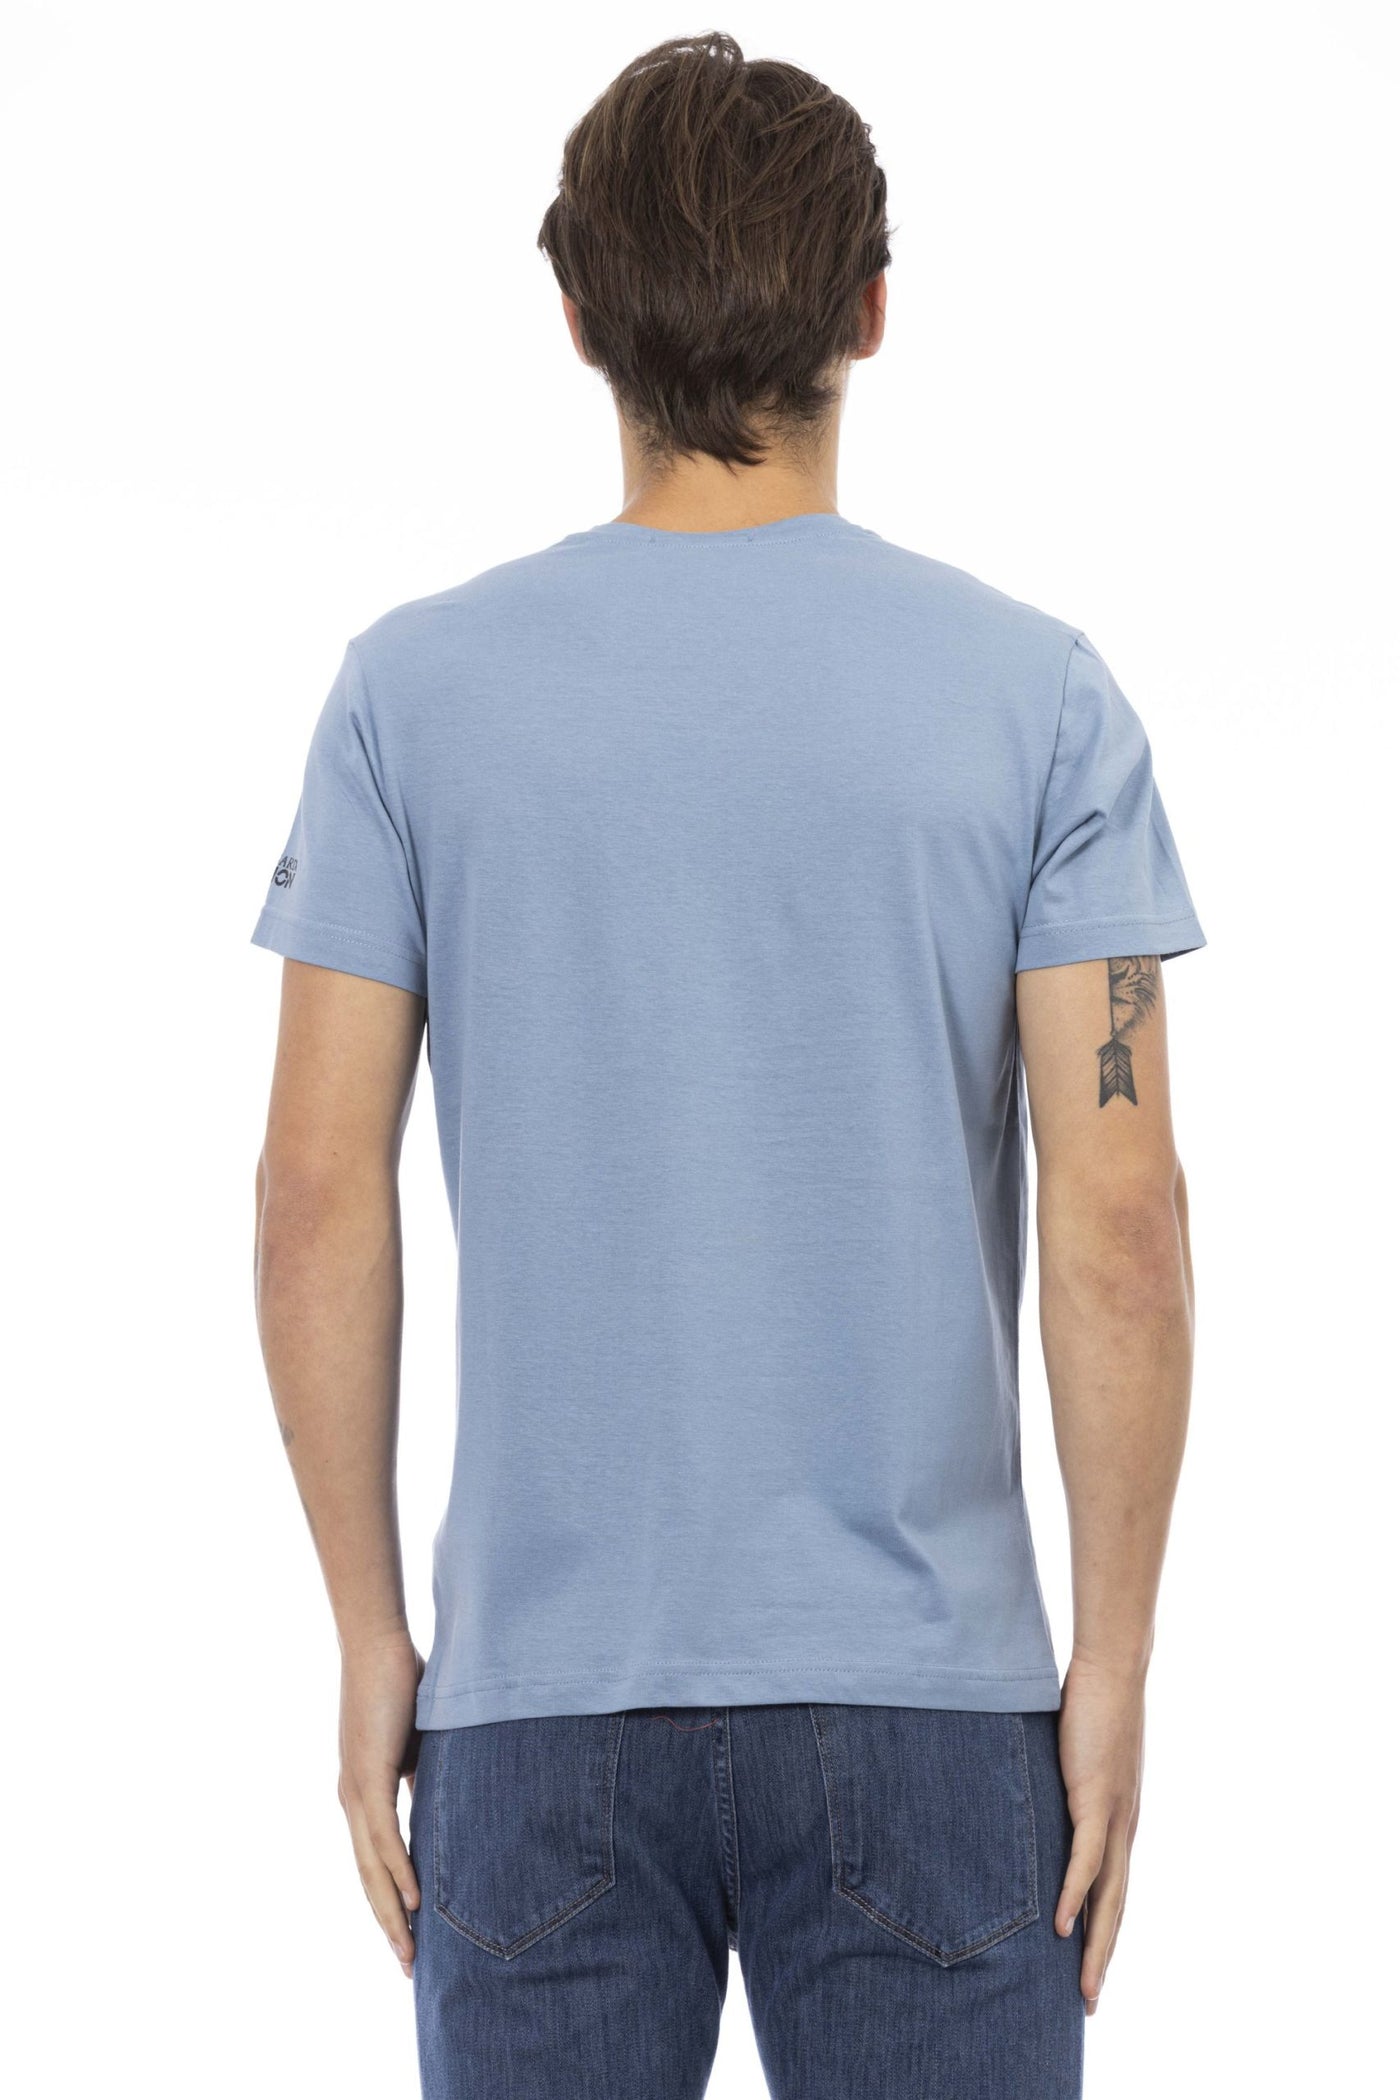 Trussardi Action Light-blue Cotton T-Shirt